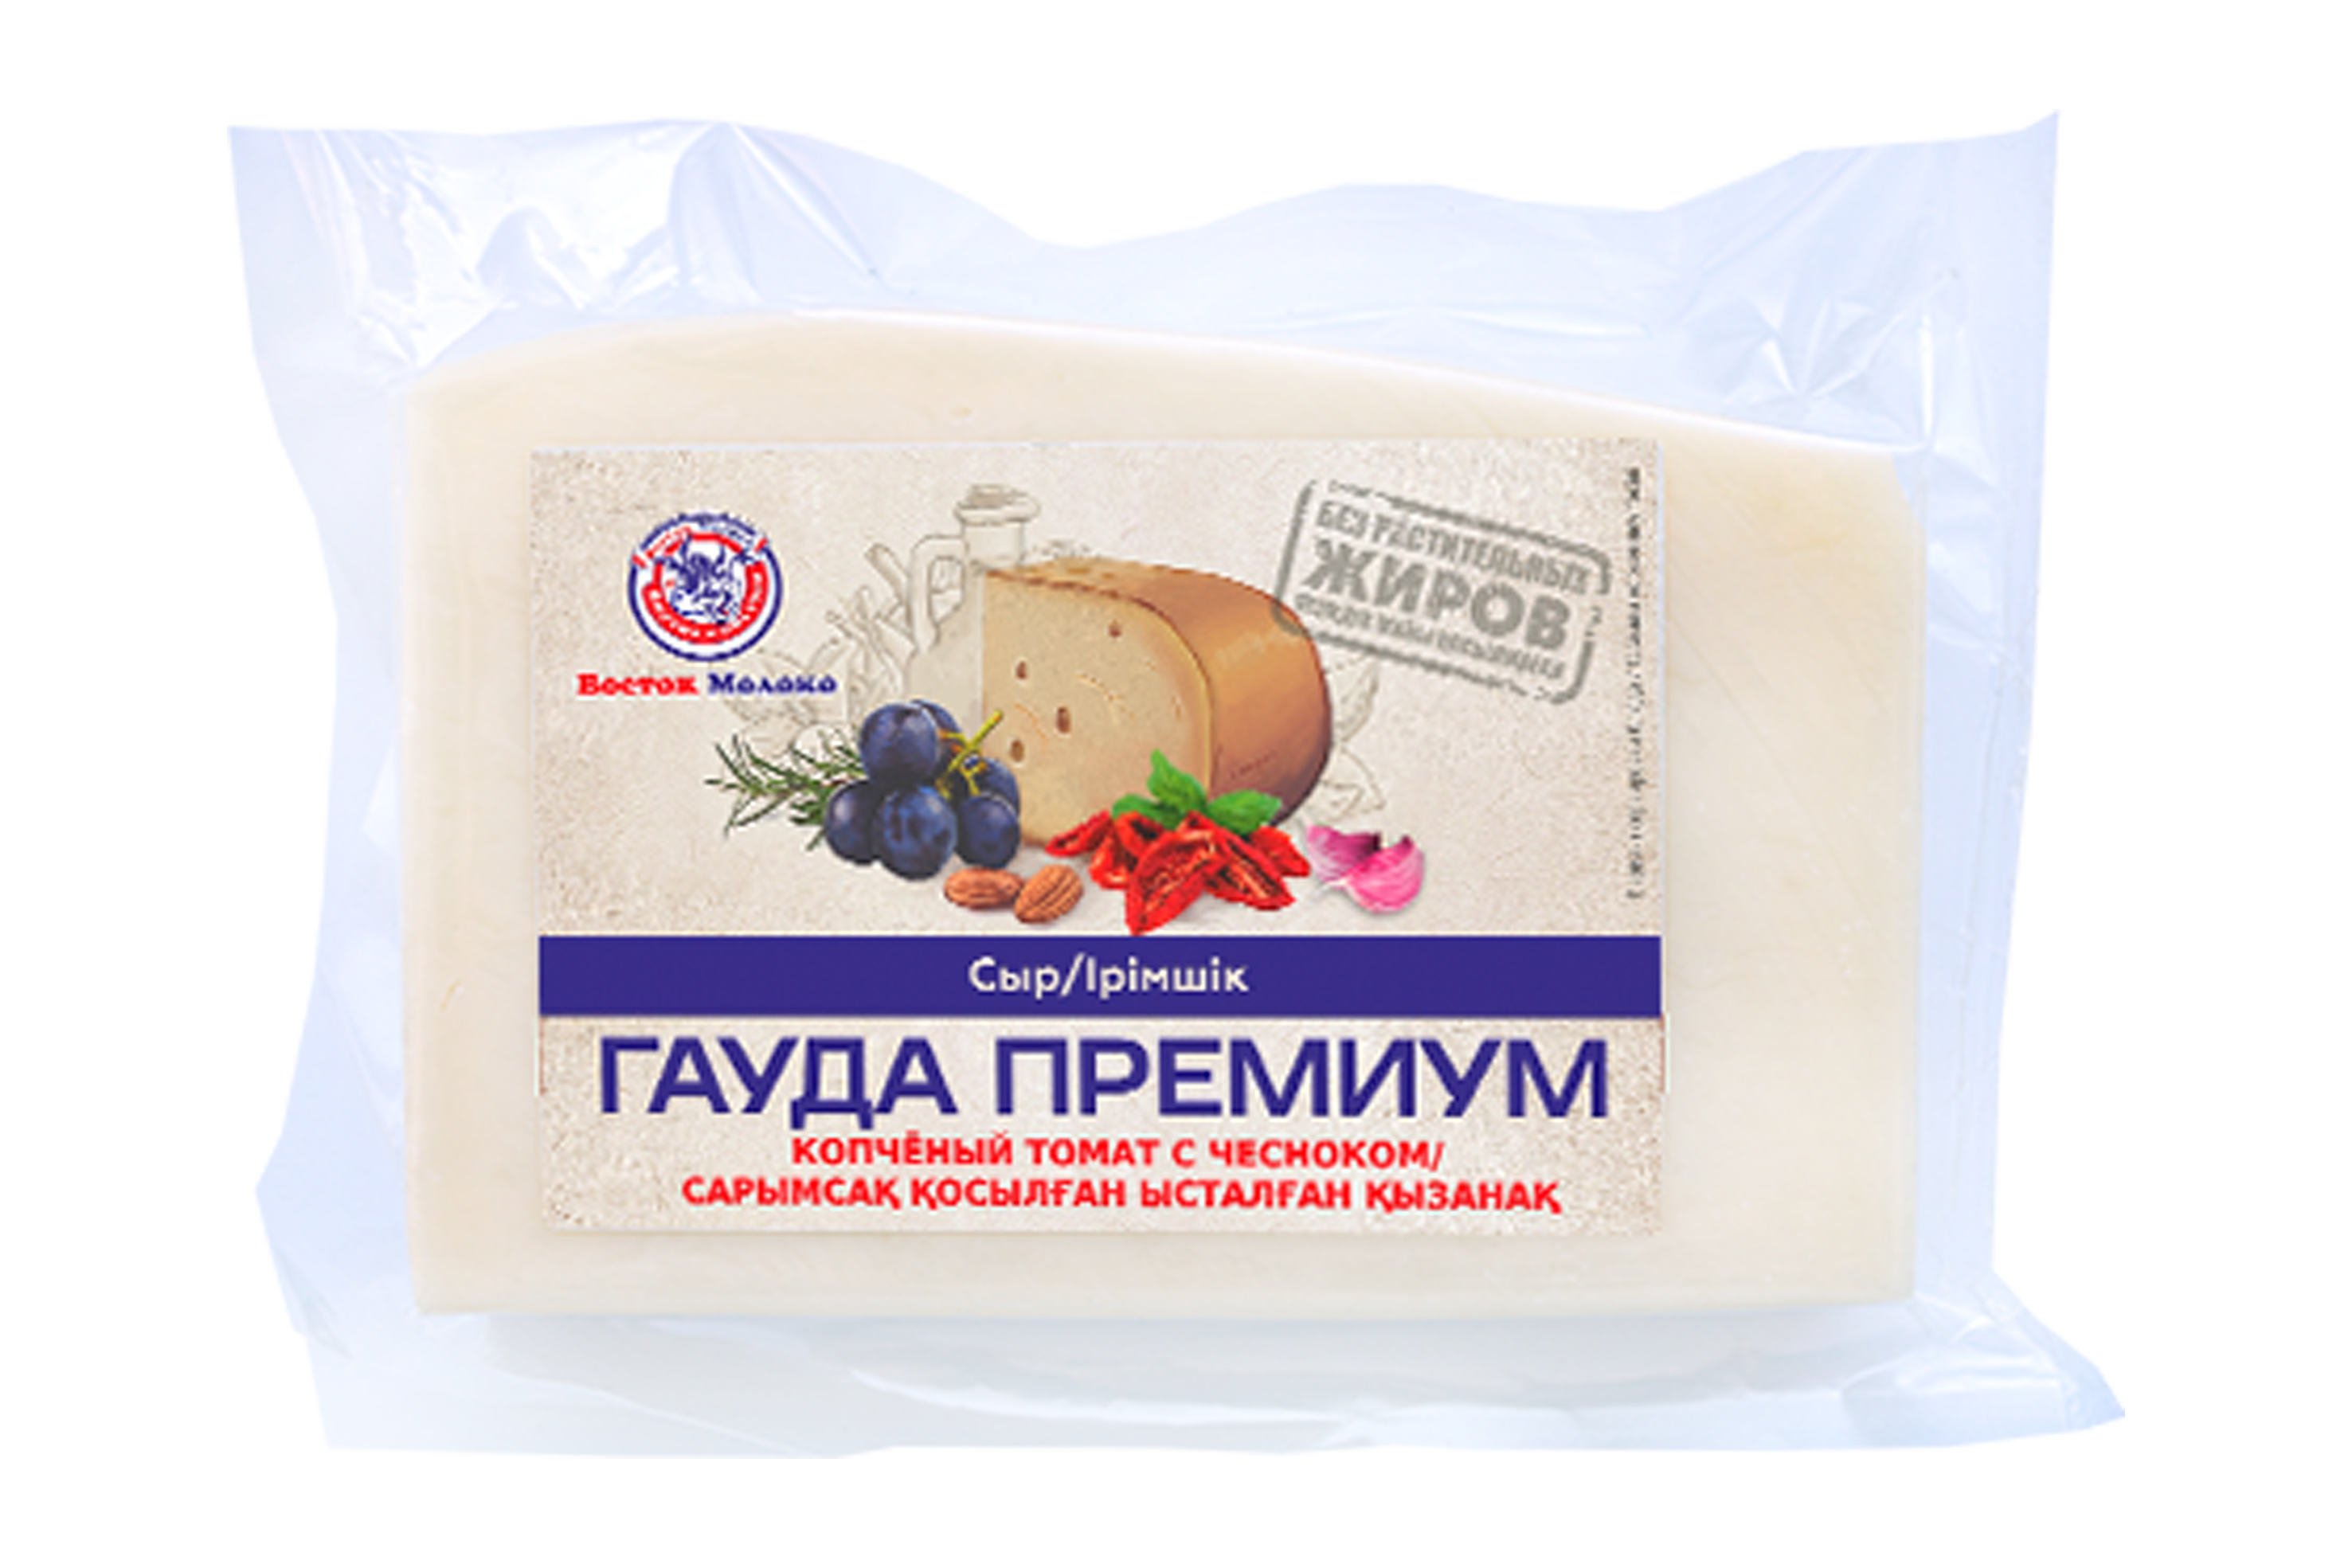 Сыр «Гауда Премиум» копчёный томат с чесноком - Корпорация «Восток-Молоко»